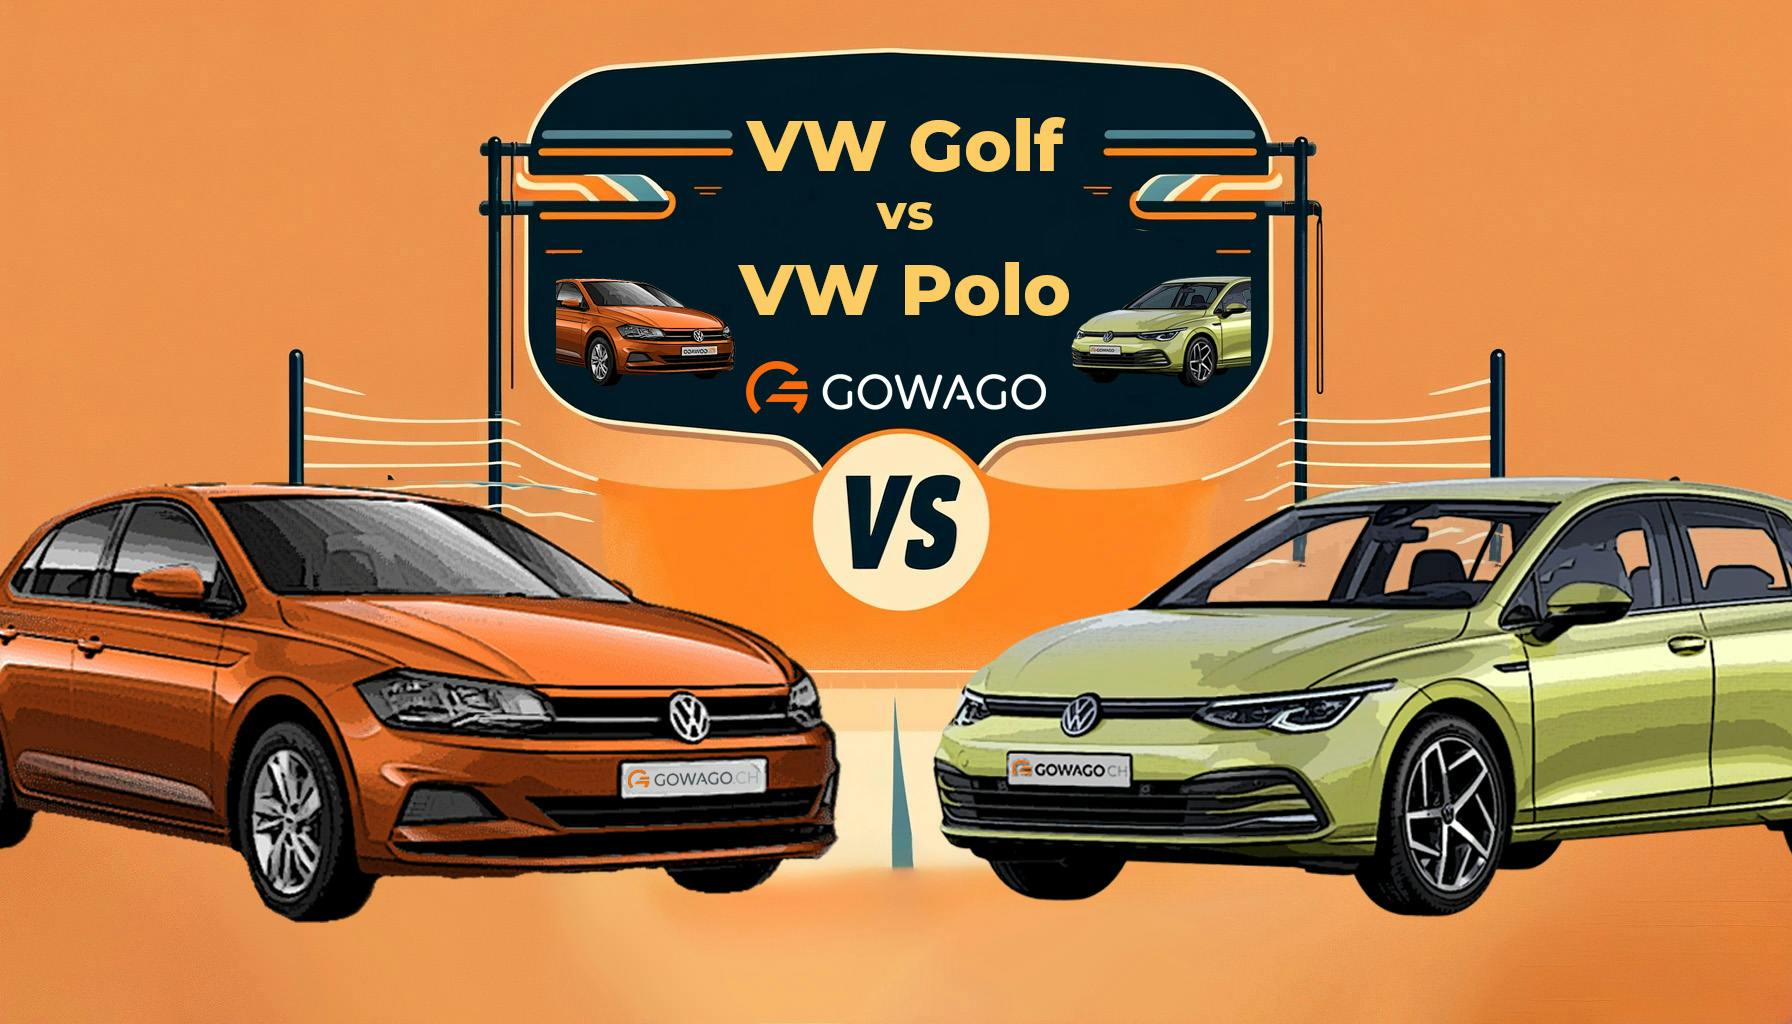 blog item card - VW Golf oder VW Polo? Für welchen VW solltest du dich entscheiden? gowago gibt dir einen Überblick! Leasingpreise ✅ Ausstattung ✅ Fahrerlebnis ✅